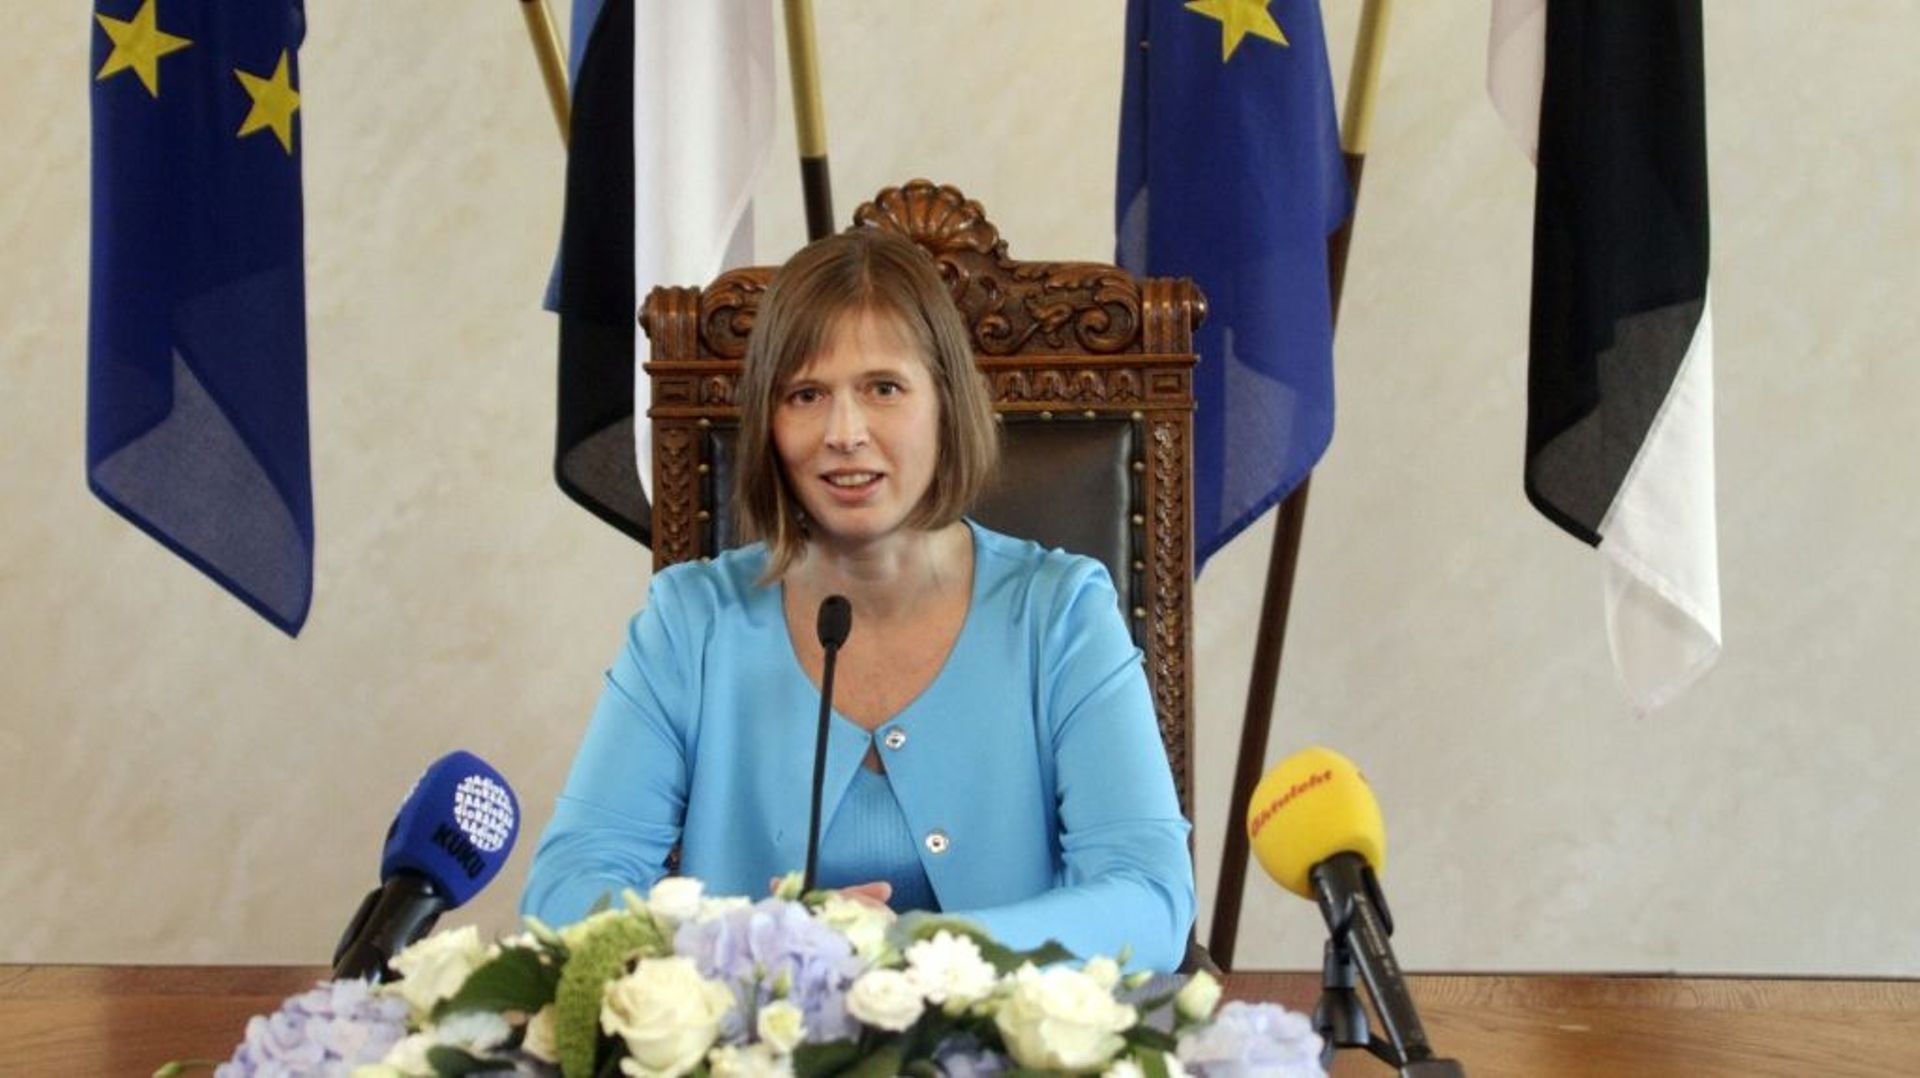 La nouvelle présidente estonienne Kersti Kaljulaid le 3 octobre 2016 à Tallinn